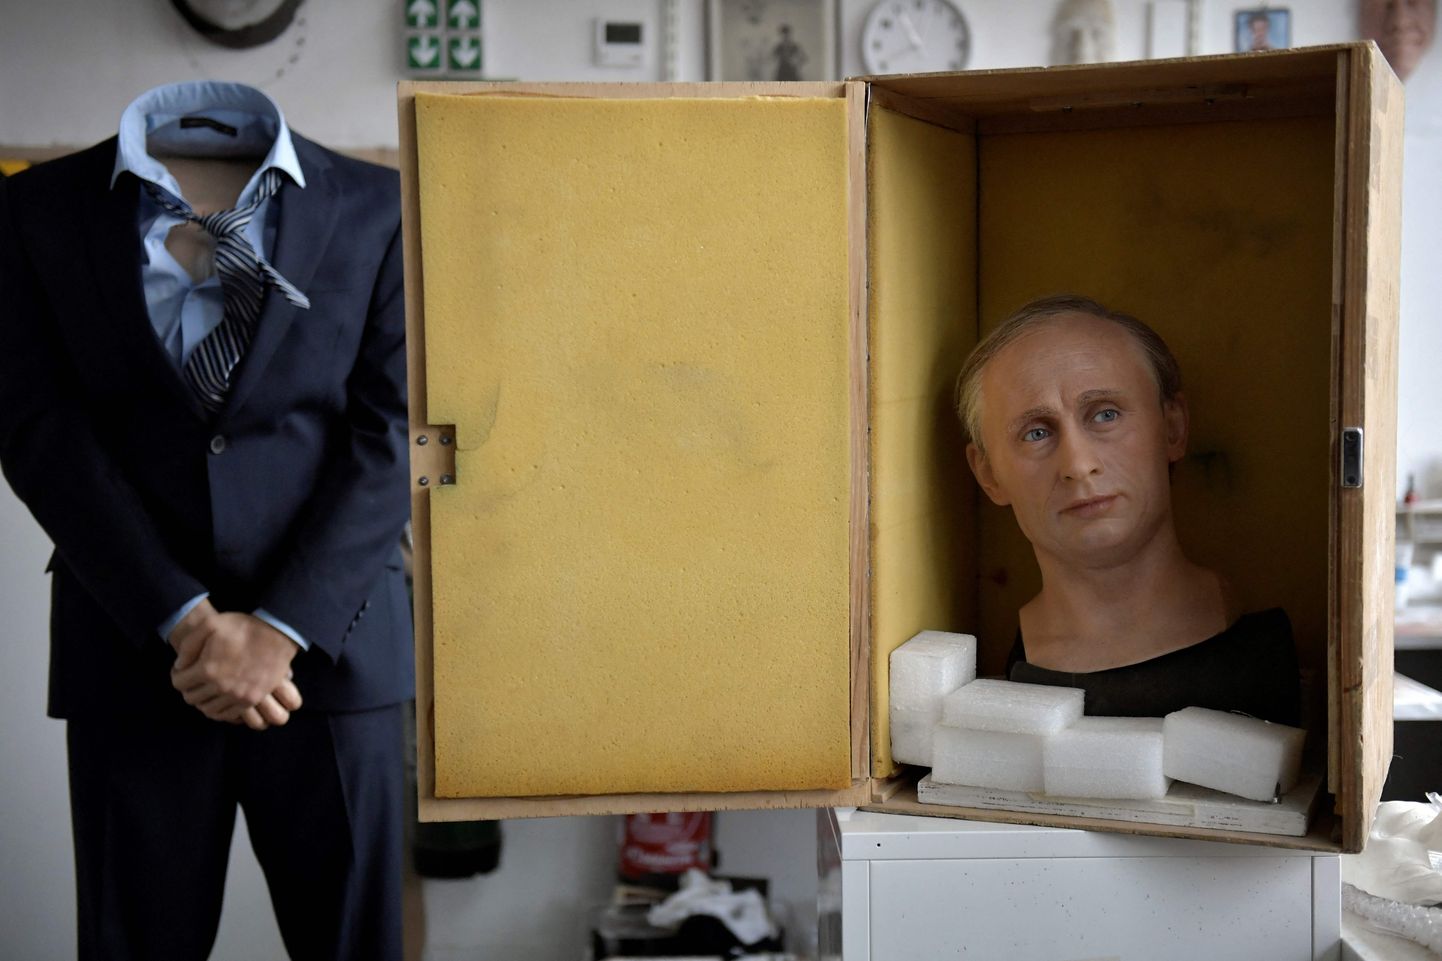 Putini vahakuju viidi laoruumi seisma ning selleks, et pea paremini säiliks, tõsteti see kasti.